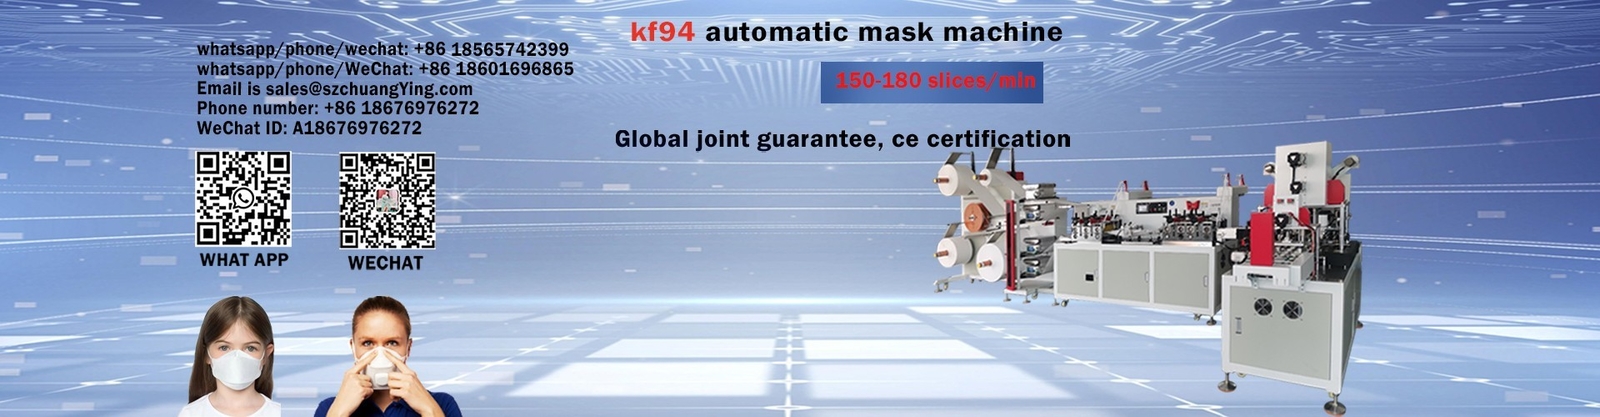 品質 機械を作るKN95マスク 工場